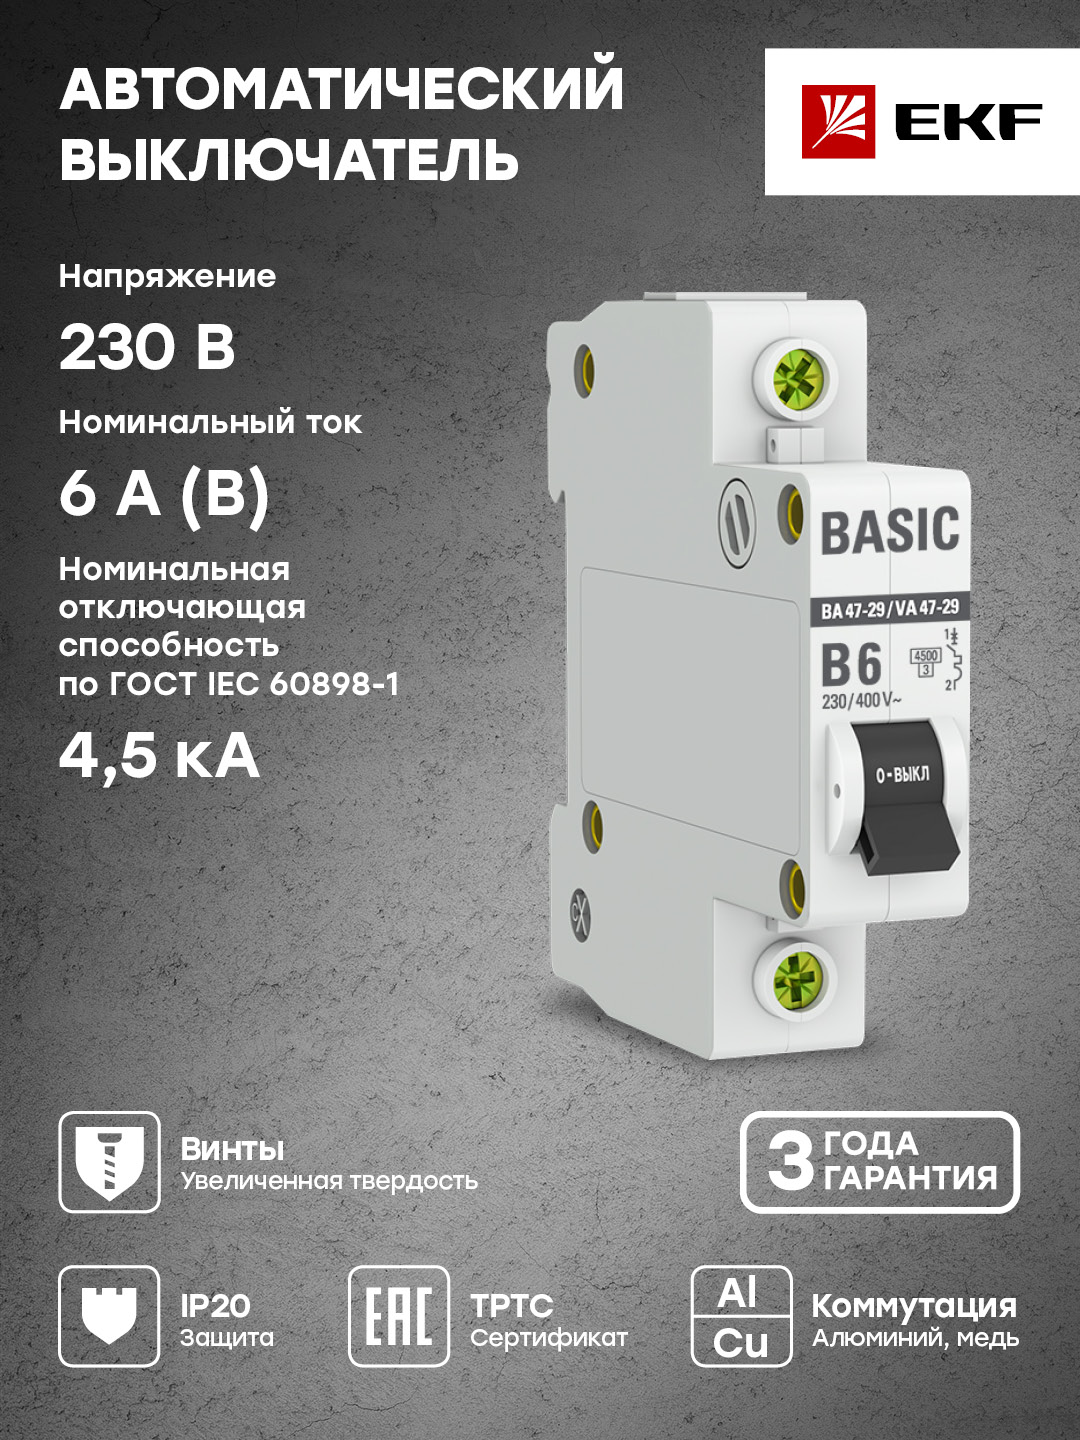 Автоматический выключатель 1P 6А (B) 4,5кА ВА 47-29 EKF Basic mcb4729-1-06-B